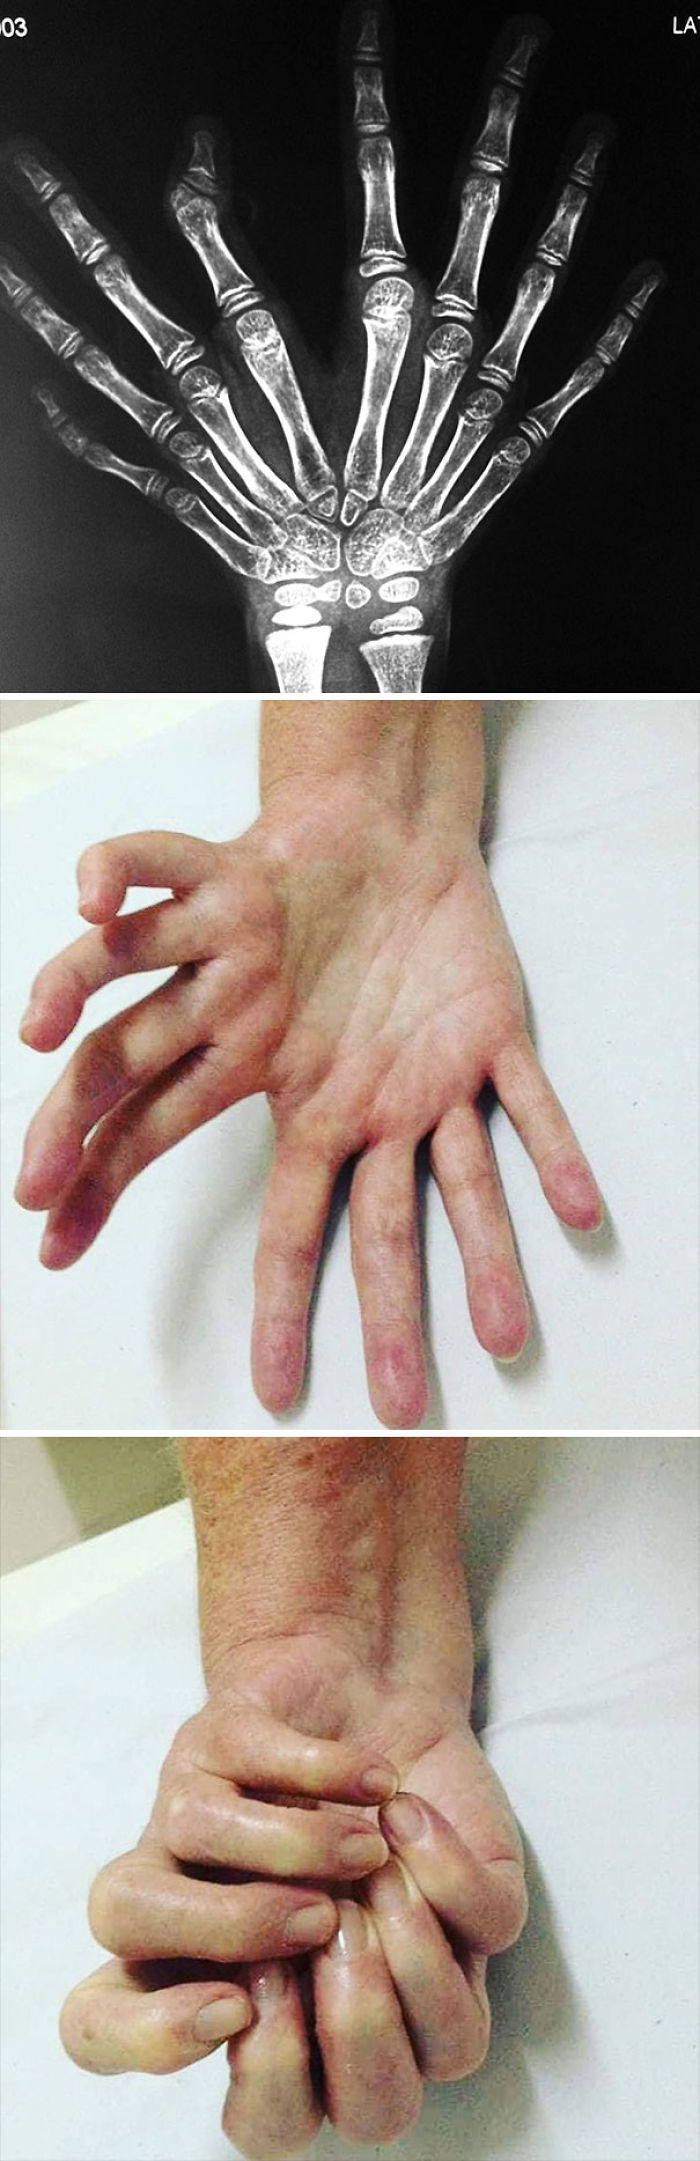 Síndrome de mano en espejo